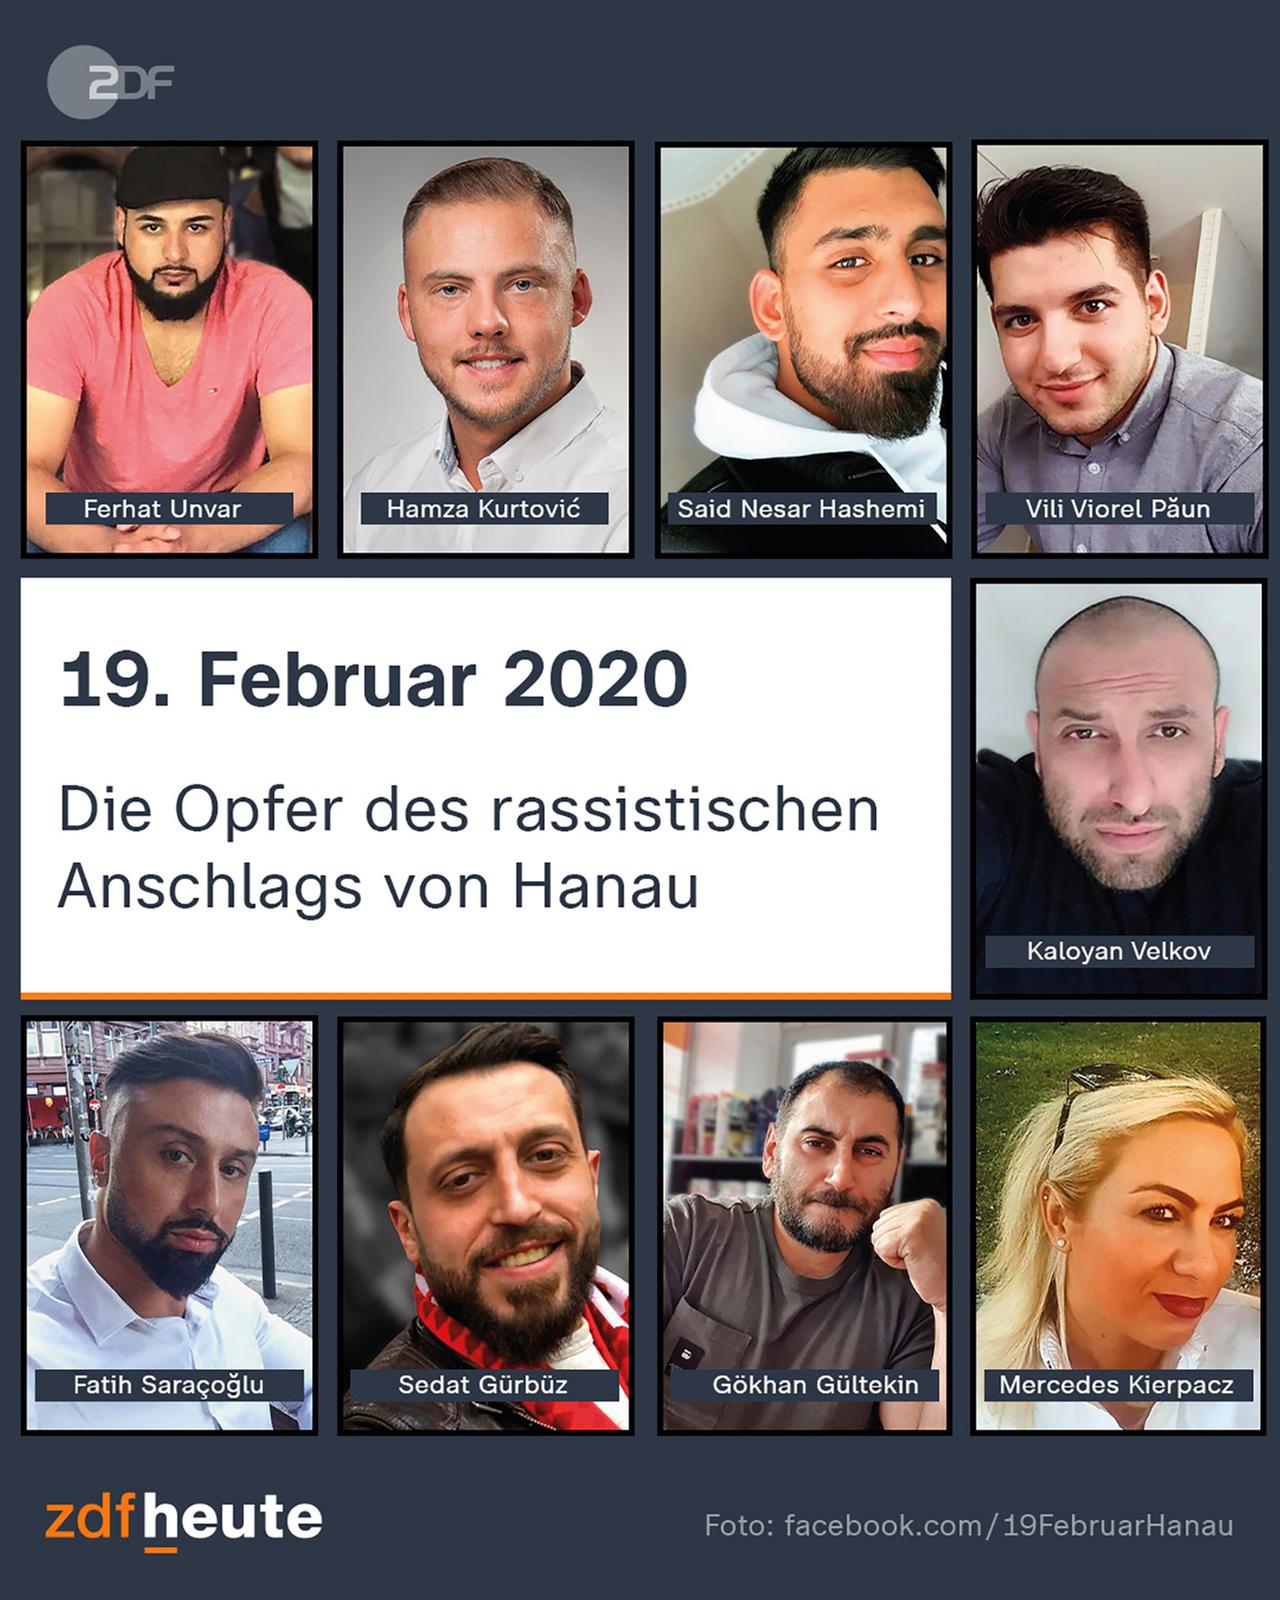 Die Opfer des rassistischen Anschlags von Hanau am 19. Feb. 2020